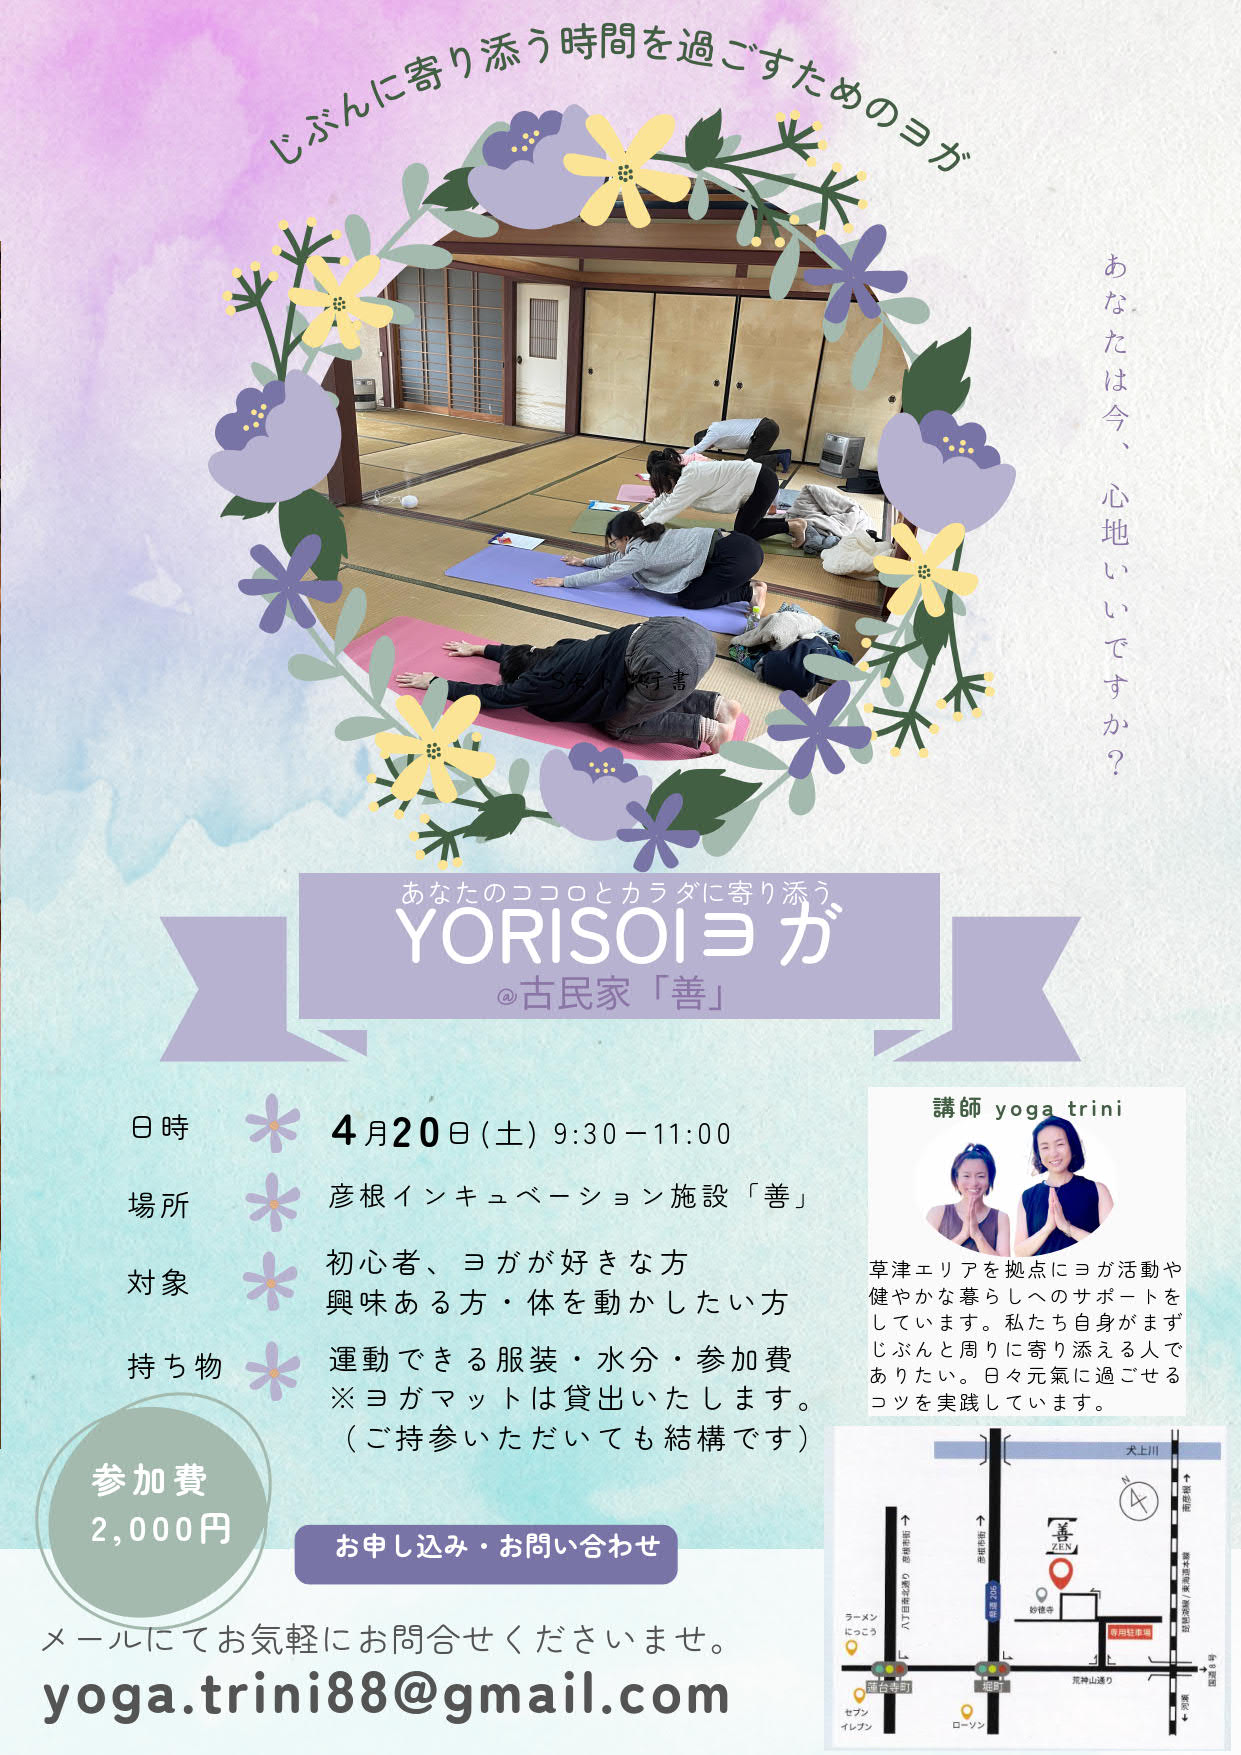 「「YORISOIヨガ」イベントのお知らせ」へリンク